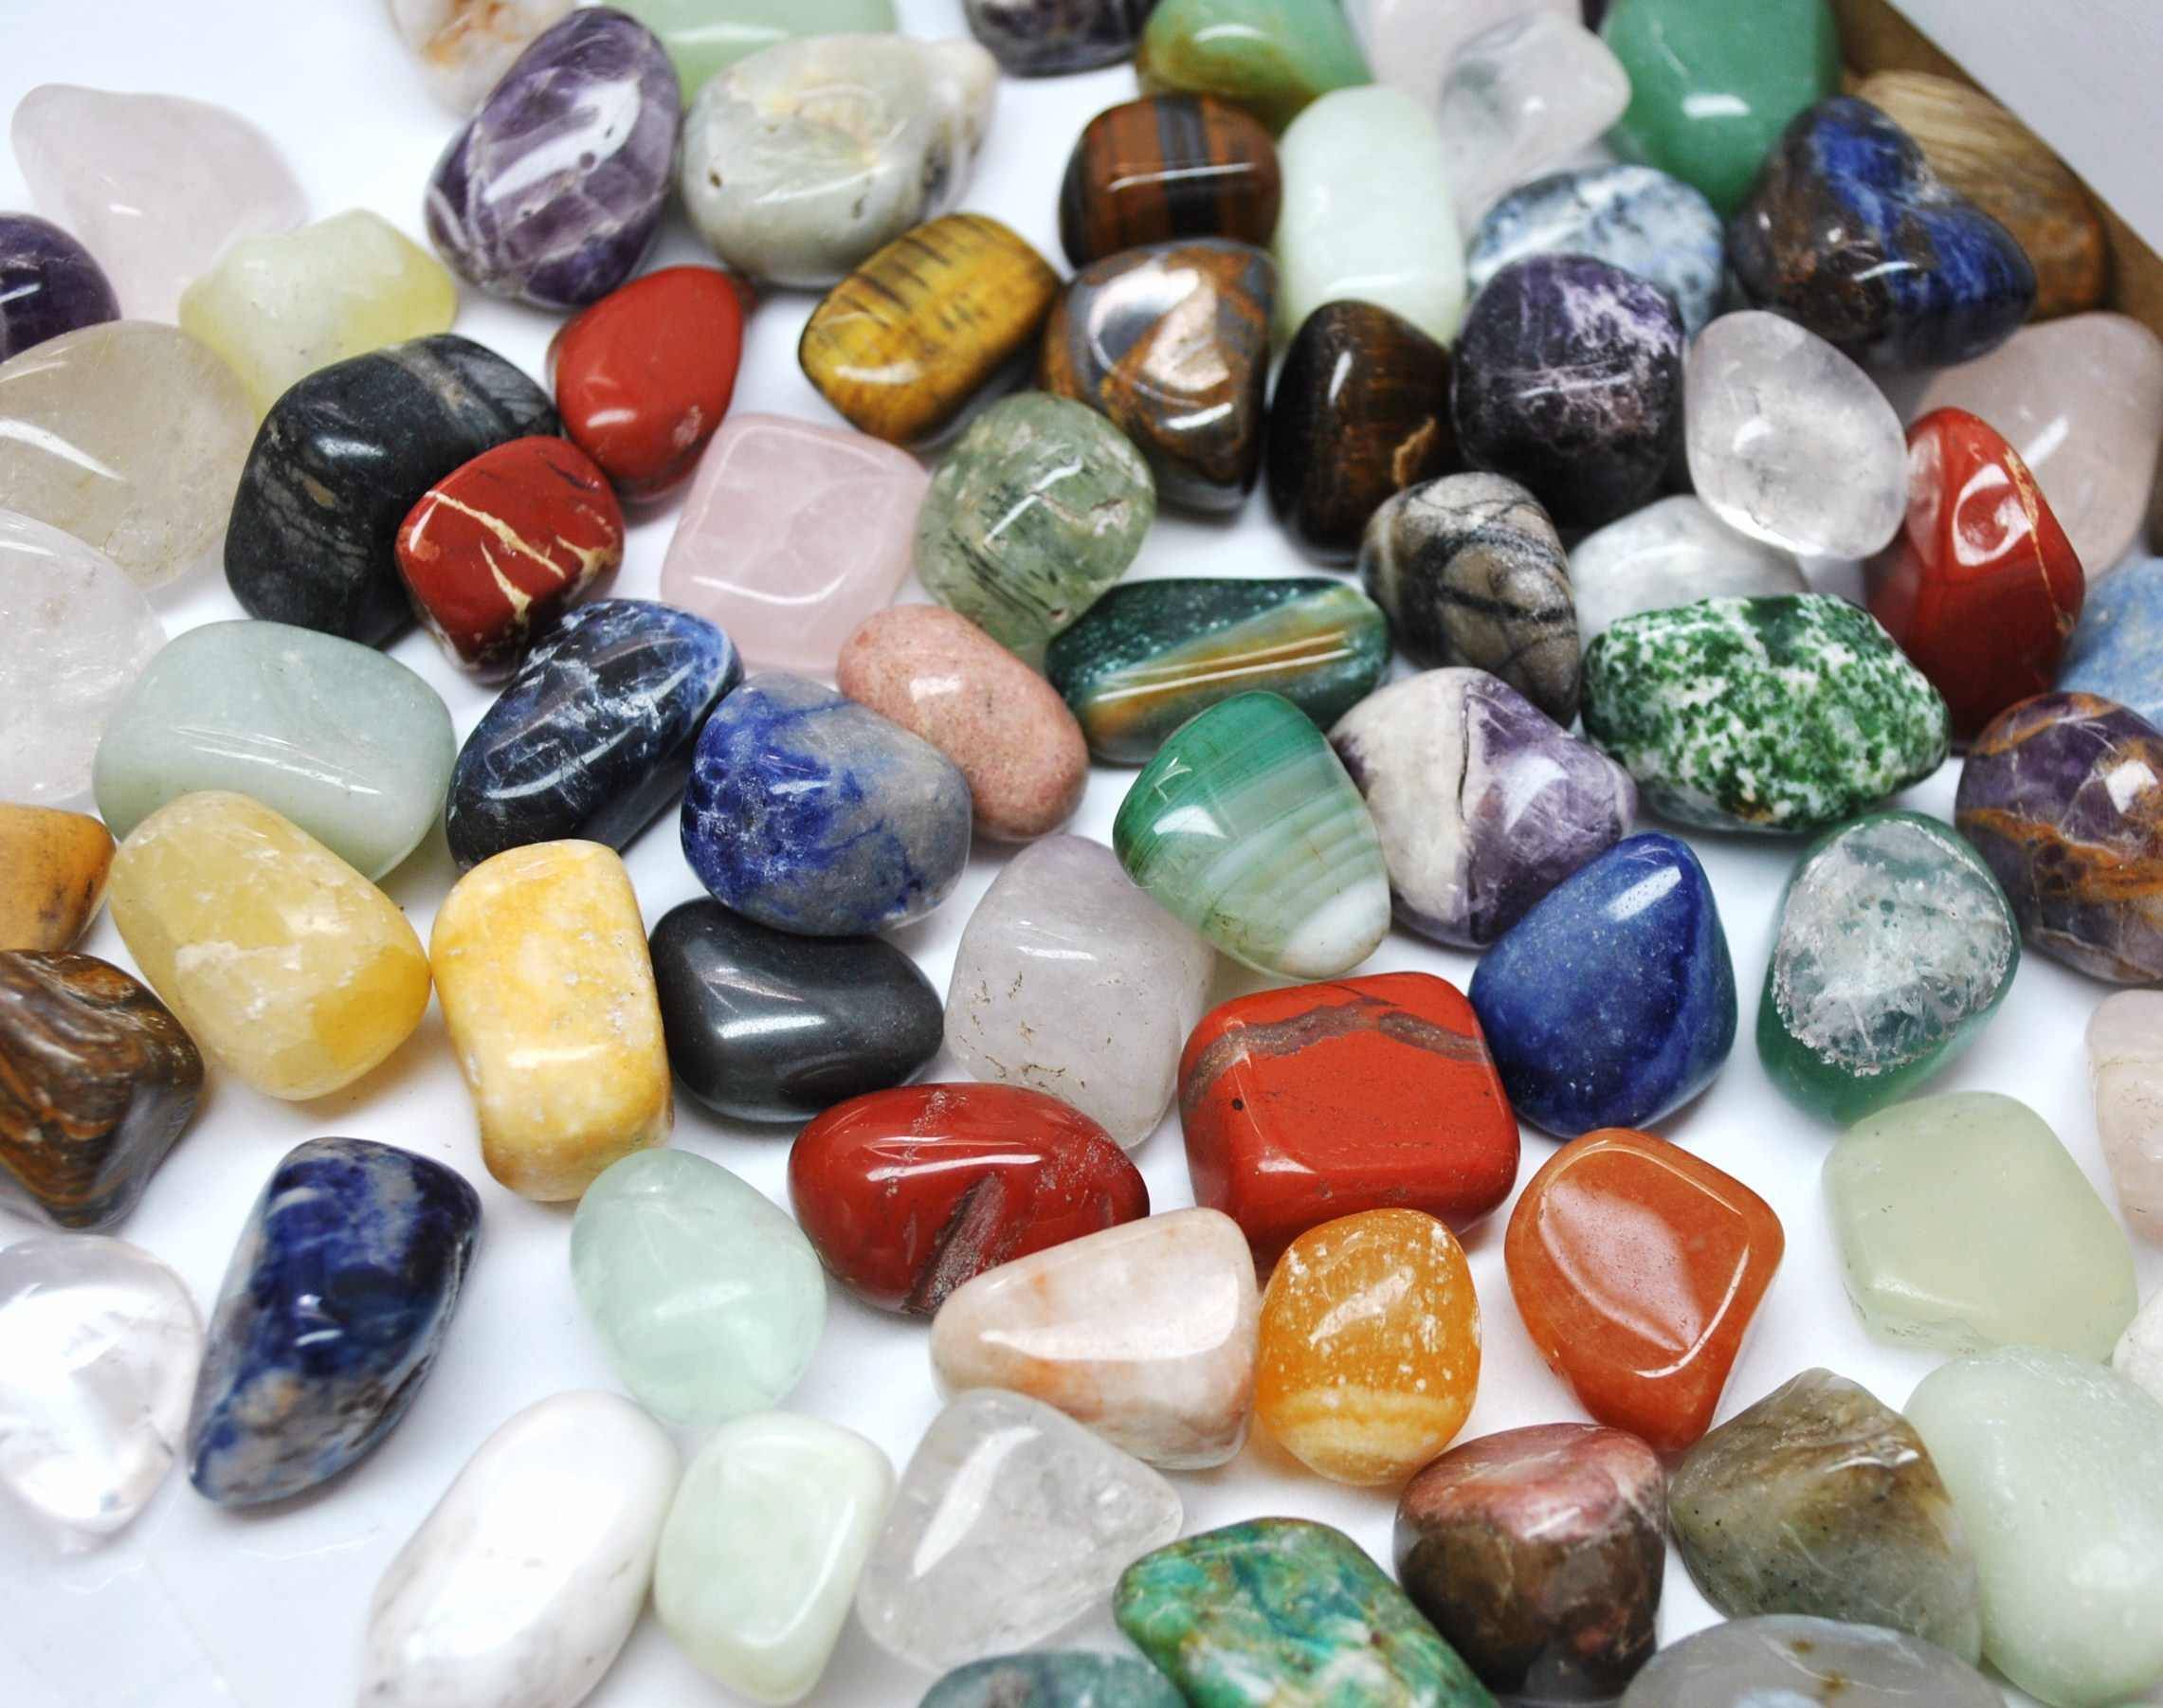 Their stones